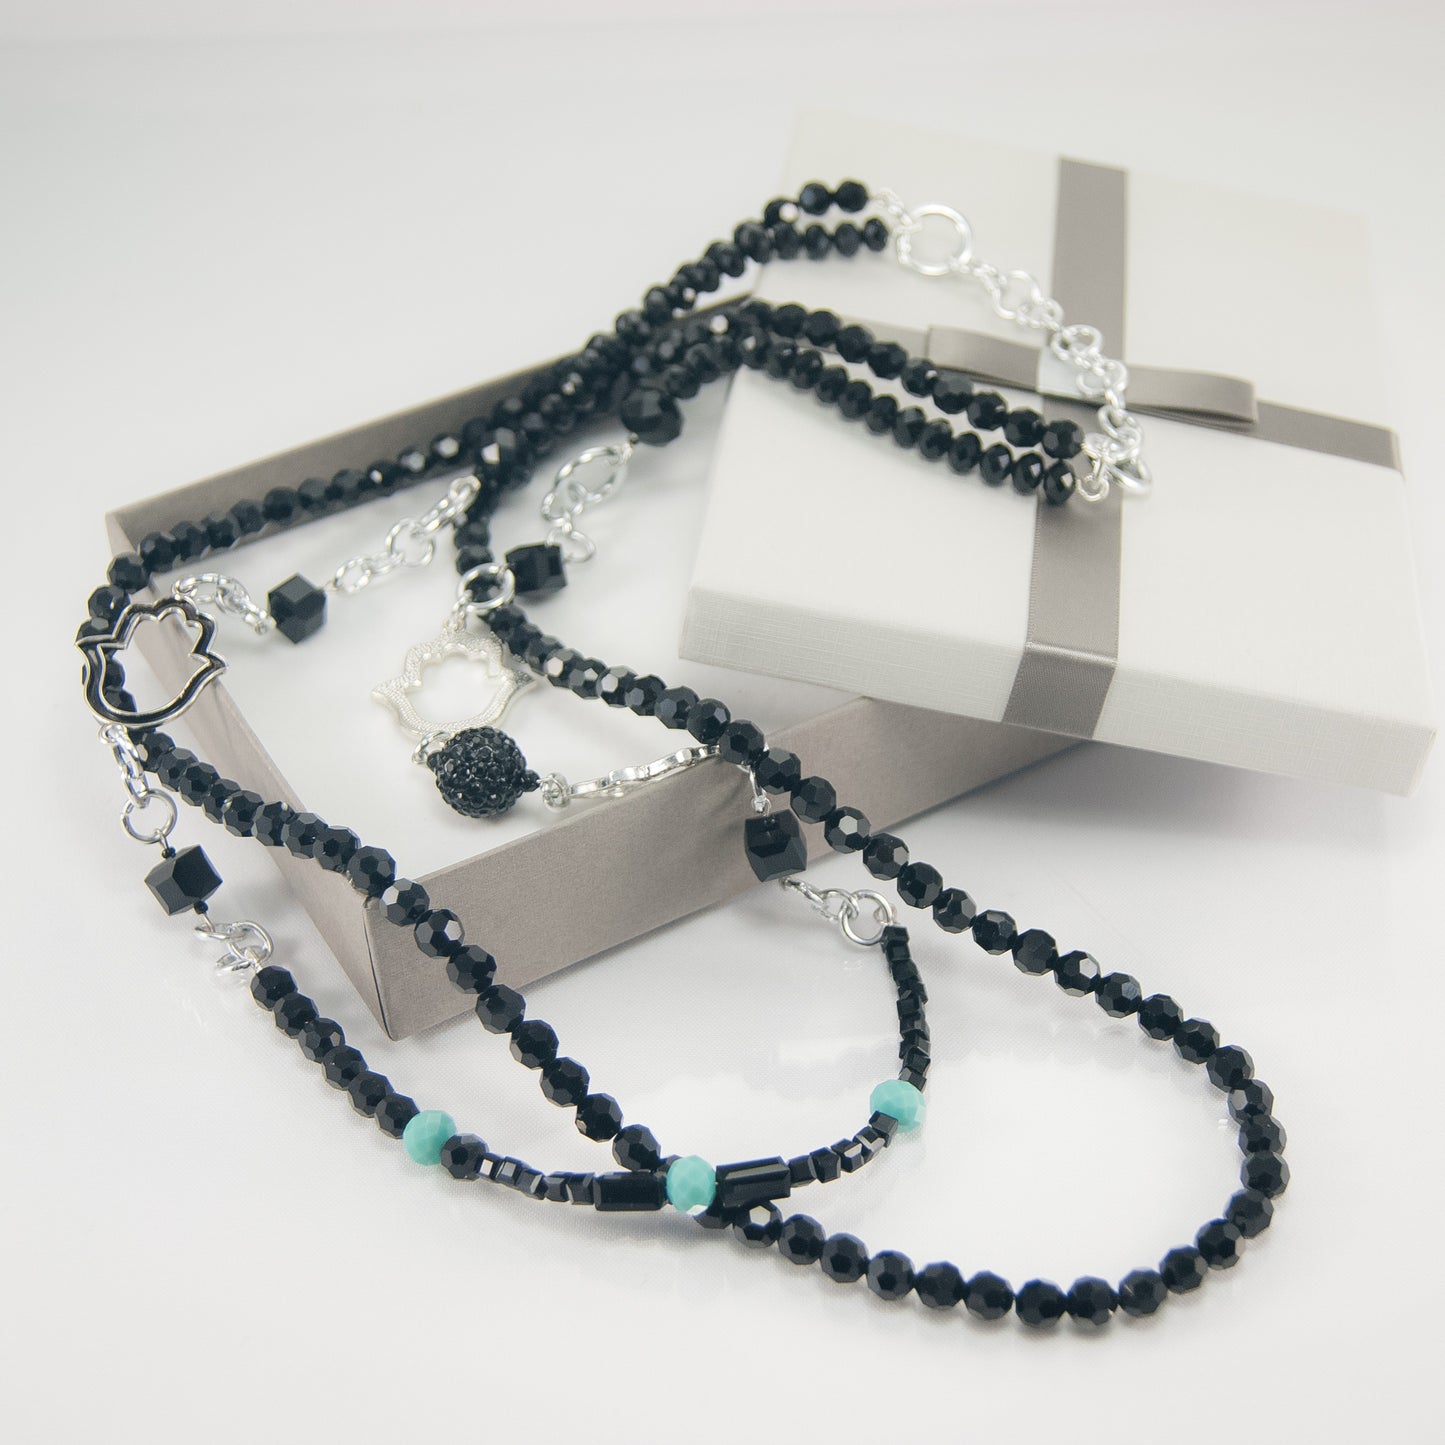 Collana I CRISTALLI .045 cristalli sfaccettati neri, perla strass e manine metalliche stilizzate.